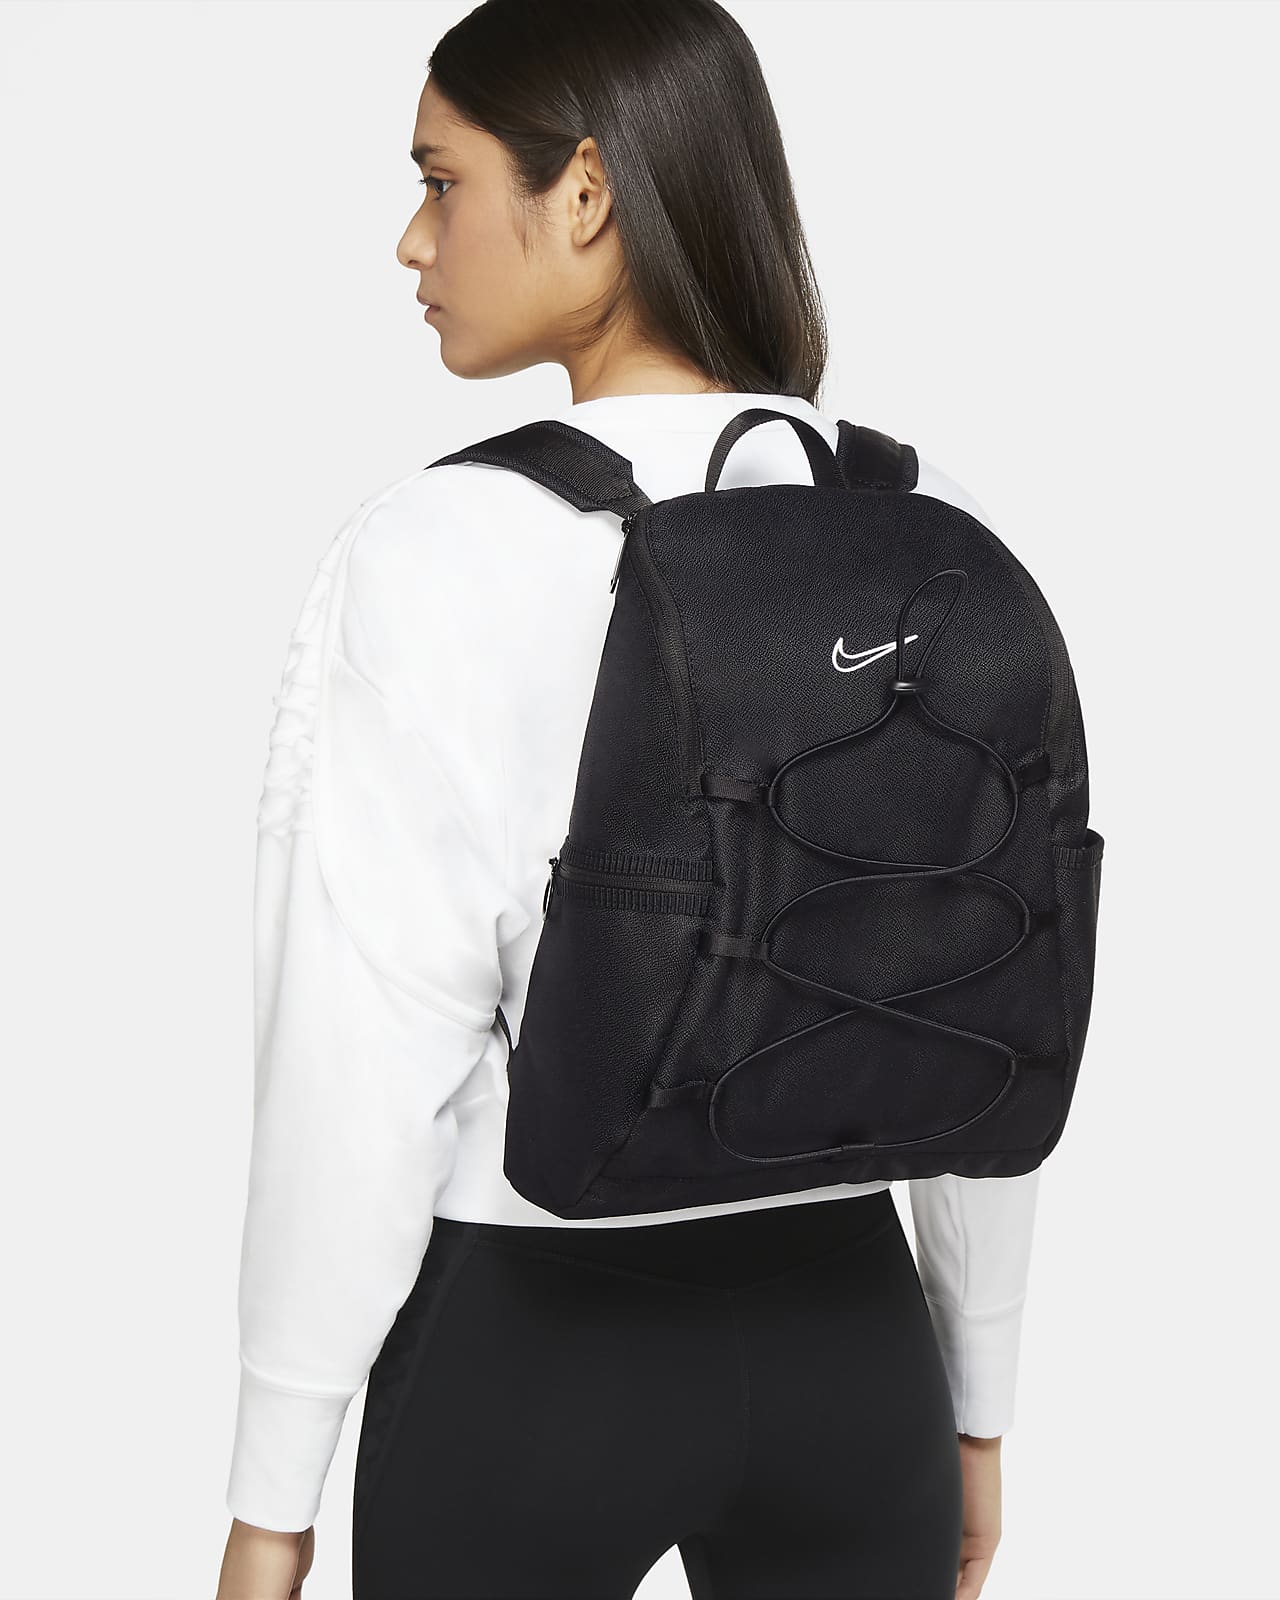 Nike One Women's Training Backpack. Nike JP